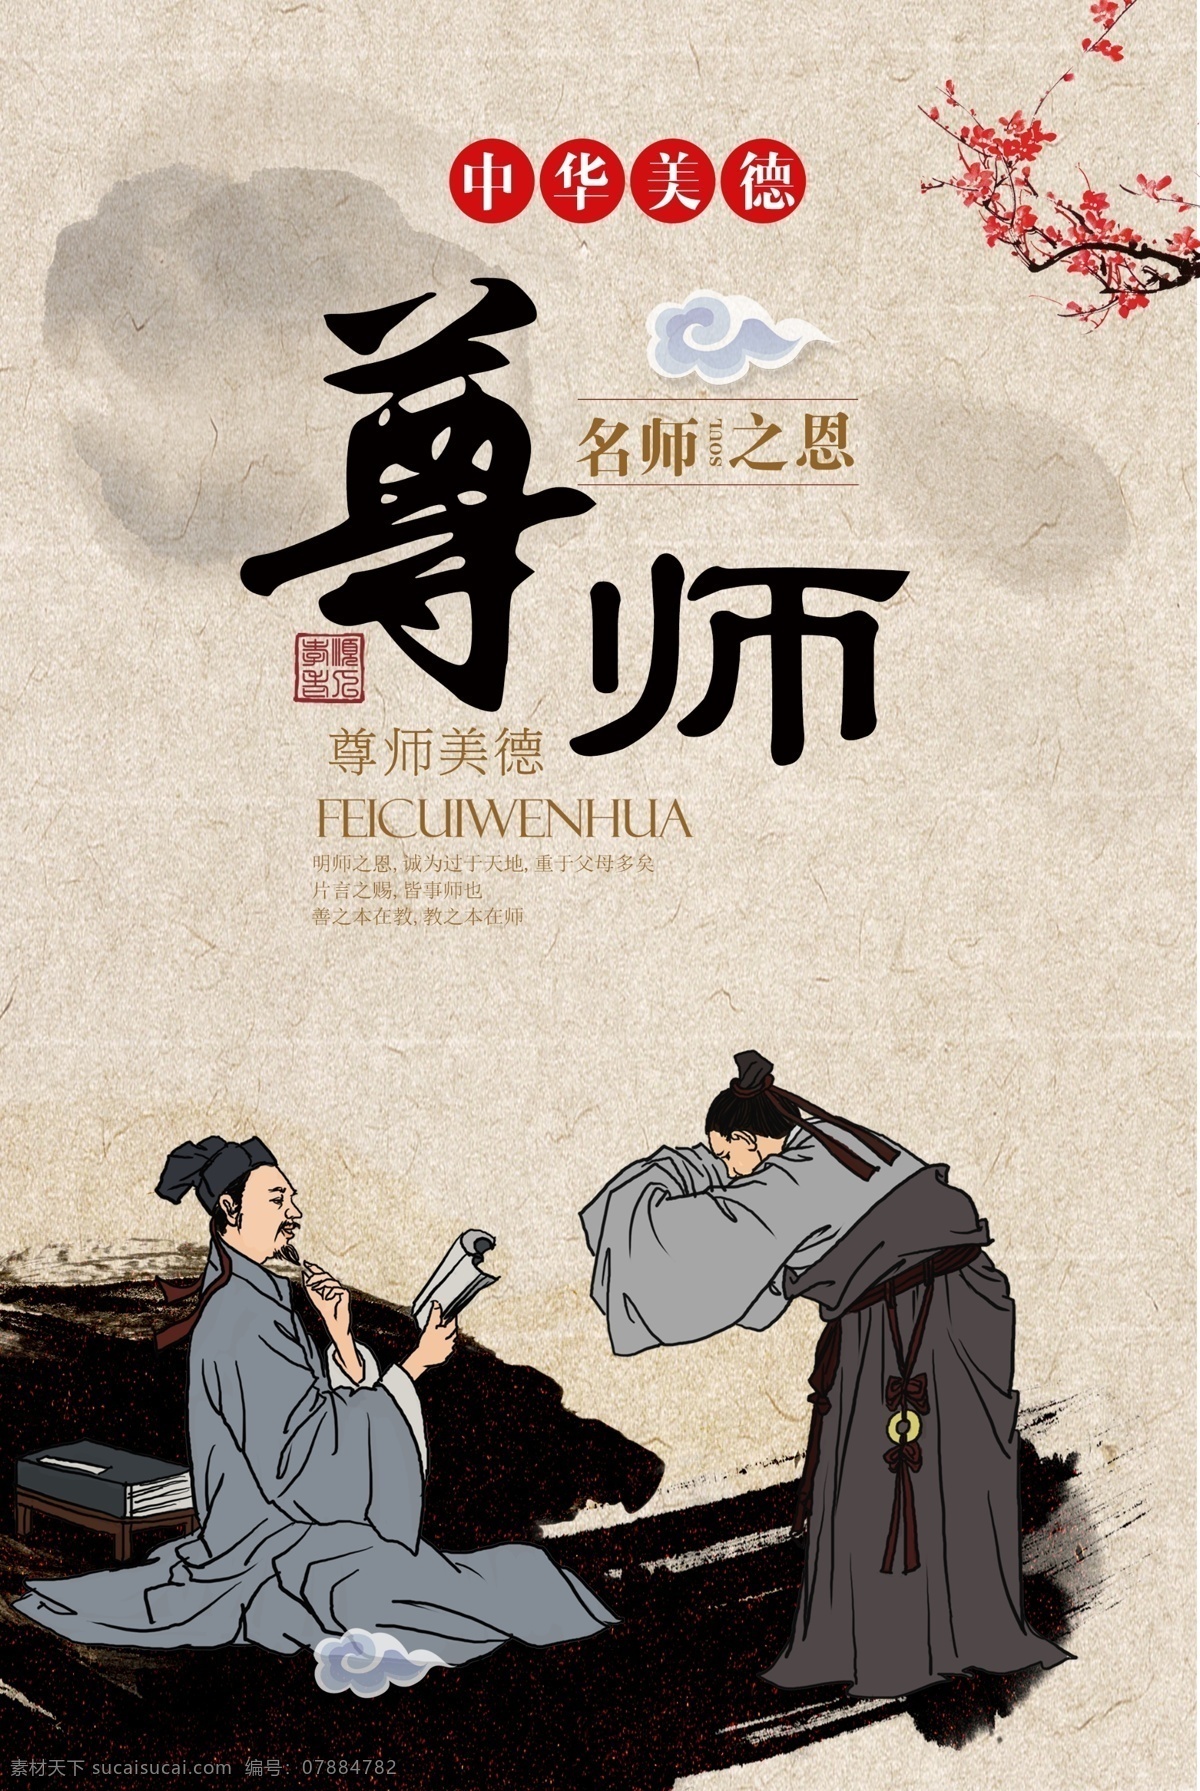 尊师 传统文化 标语 海报 传统 文化 社会 公益 宣传